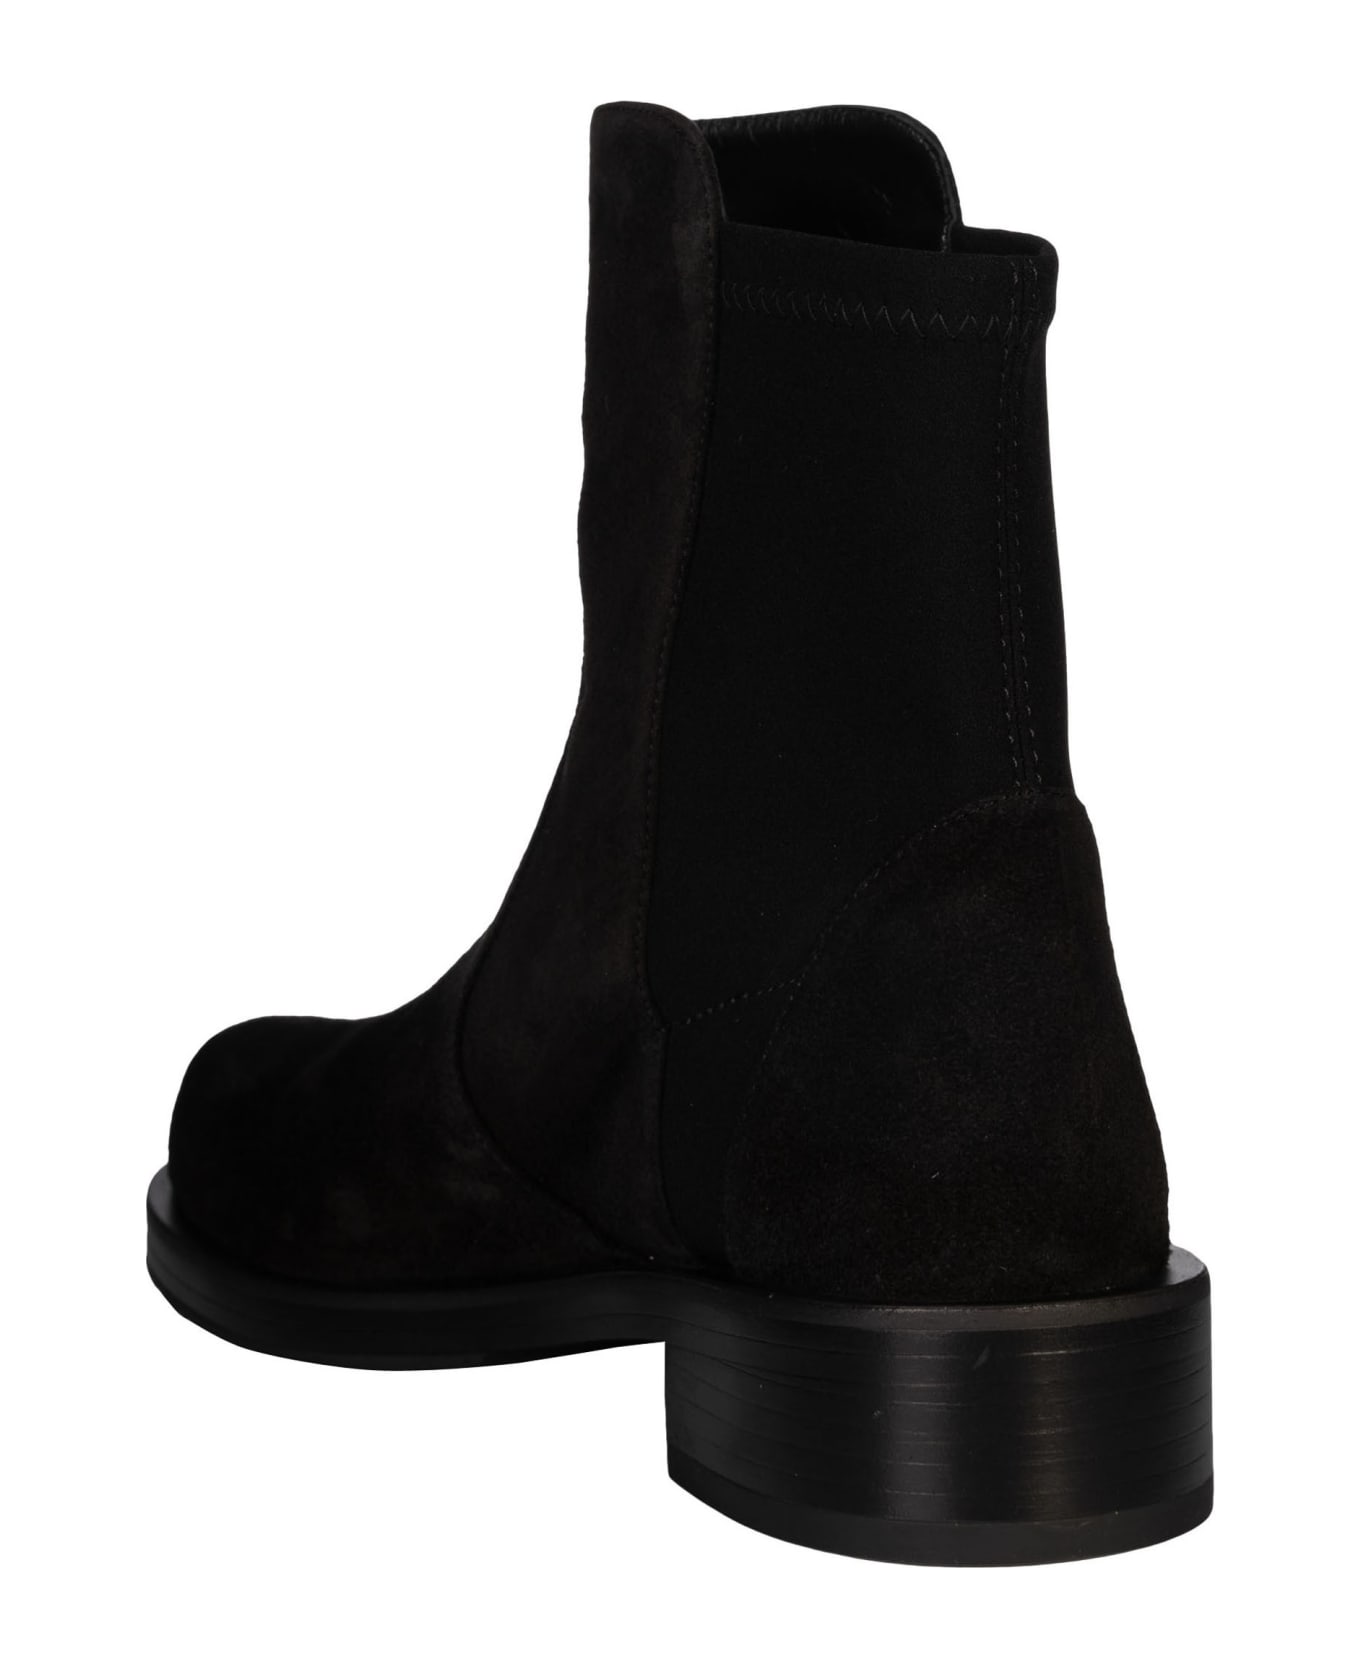 Stuart Weitzman Bold Boots - Black